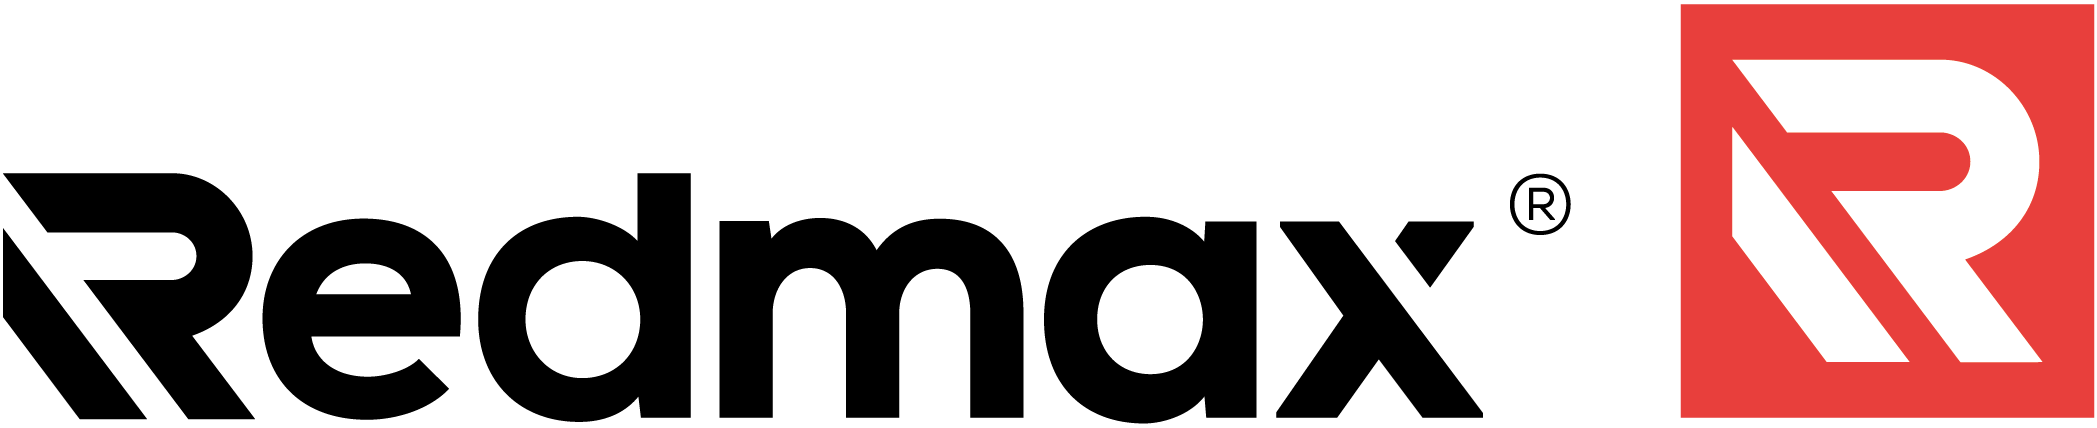 Sportswear Logo - Redmax Sportswear